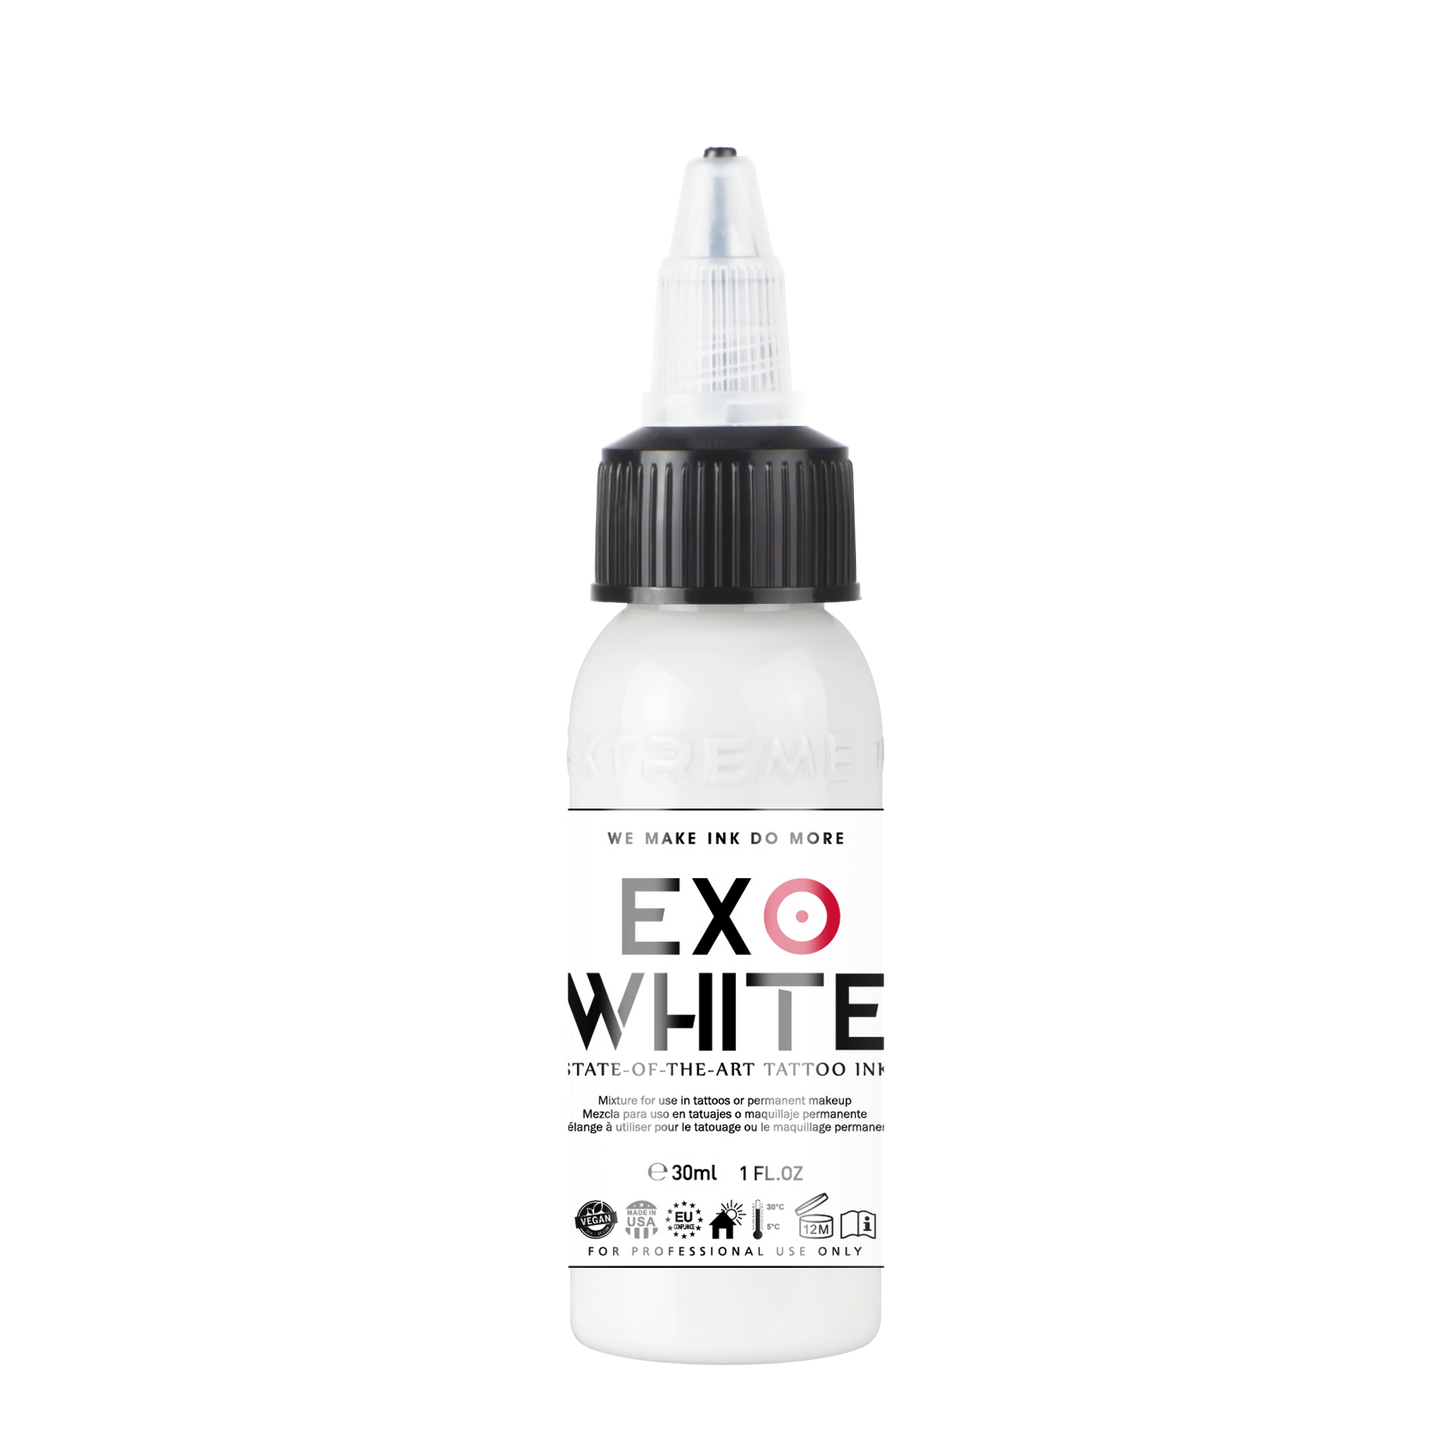 Xtreme EXO White